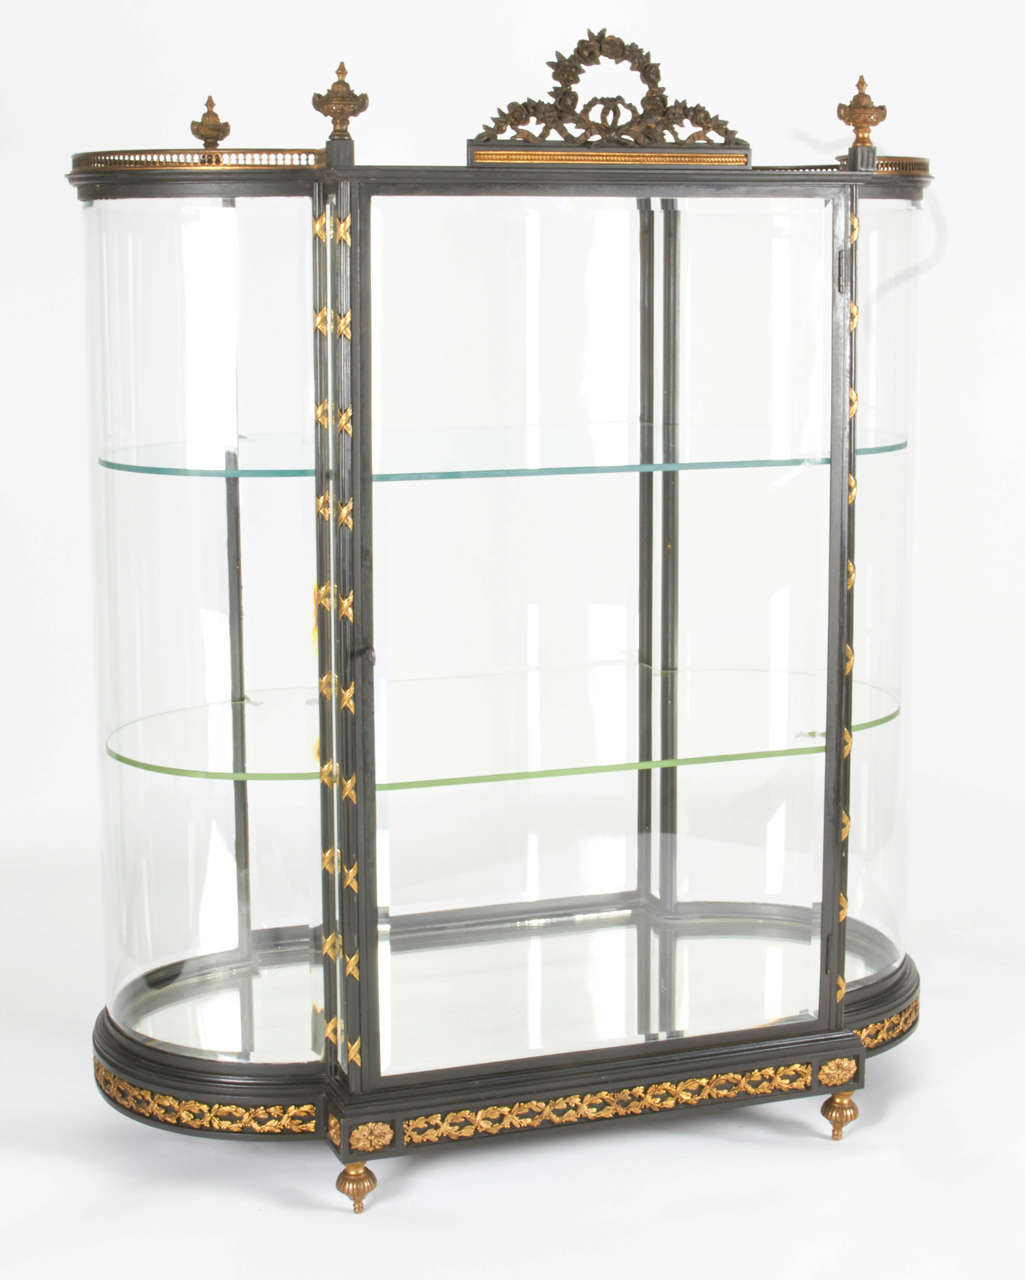 Belle vitrine à bijoux en bronze doré, bronze patiné, acier et verre, Paris, vers 1890-1910. Il est très inhabituel de voir ces vitrines ayant le verre incurvé d'origine, tout biseauté après plus de 100 ans, avec des étagères en verre d'origine et